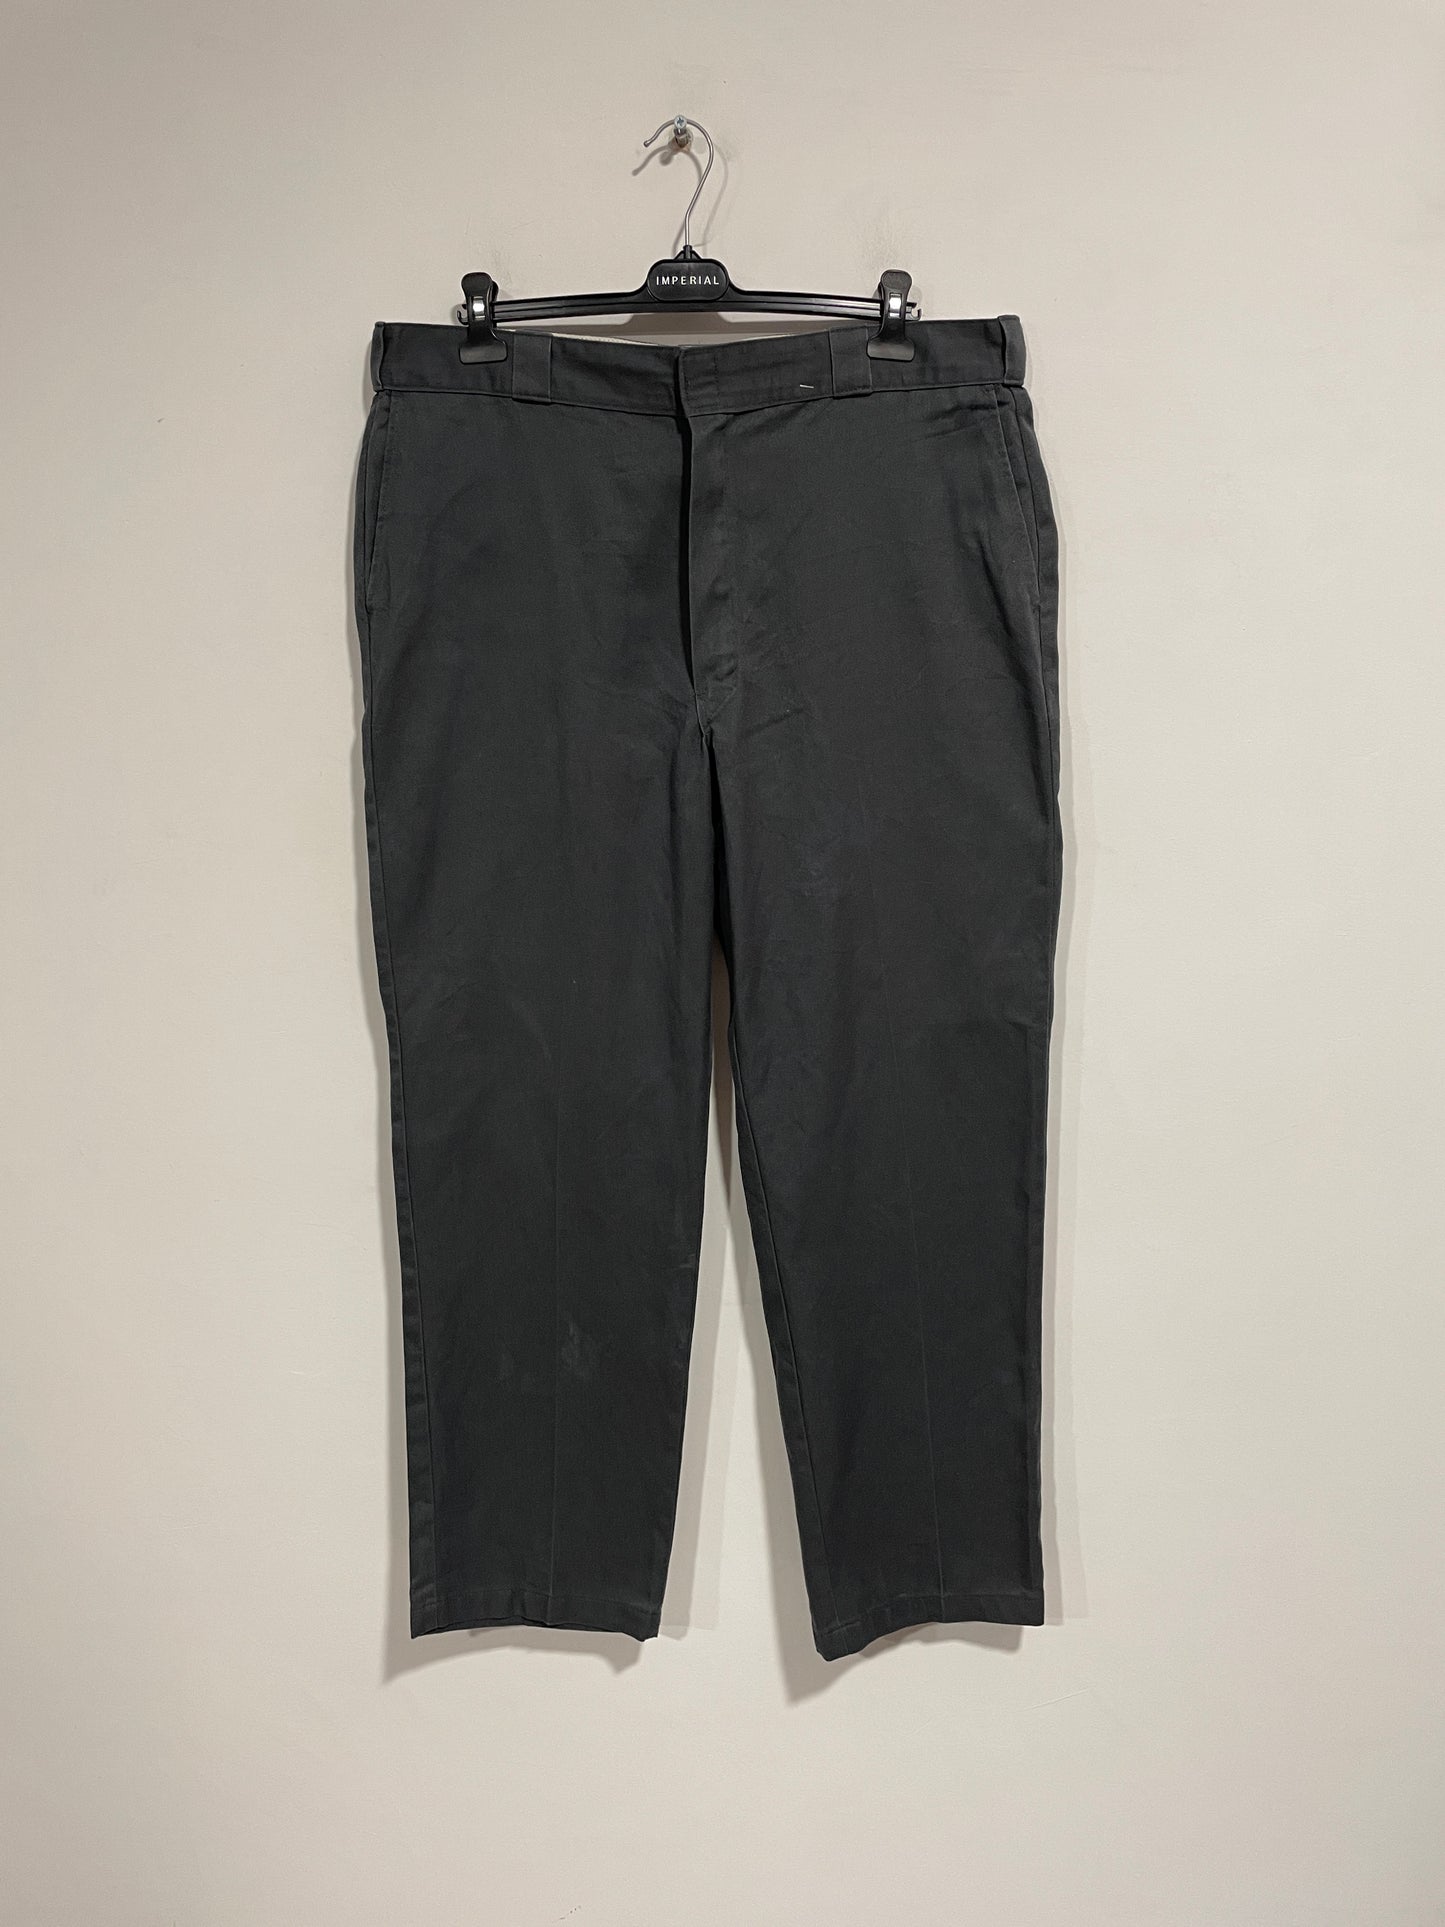 Pantalone Dickies workwear Grigio (C452)